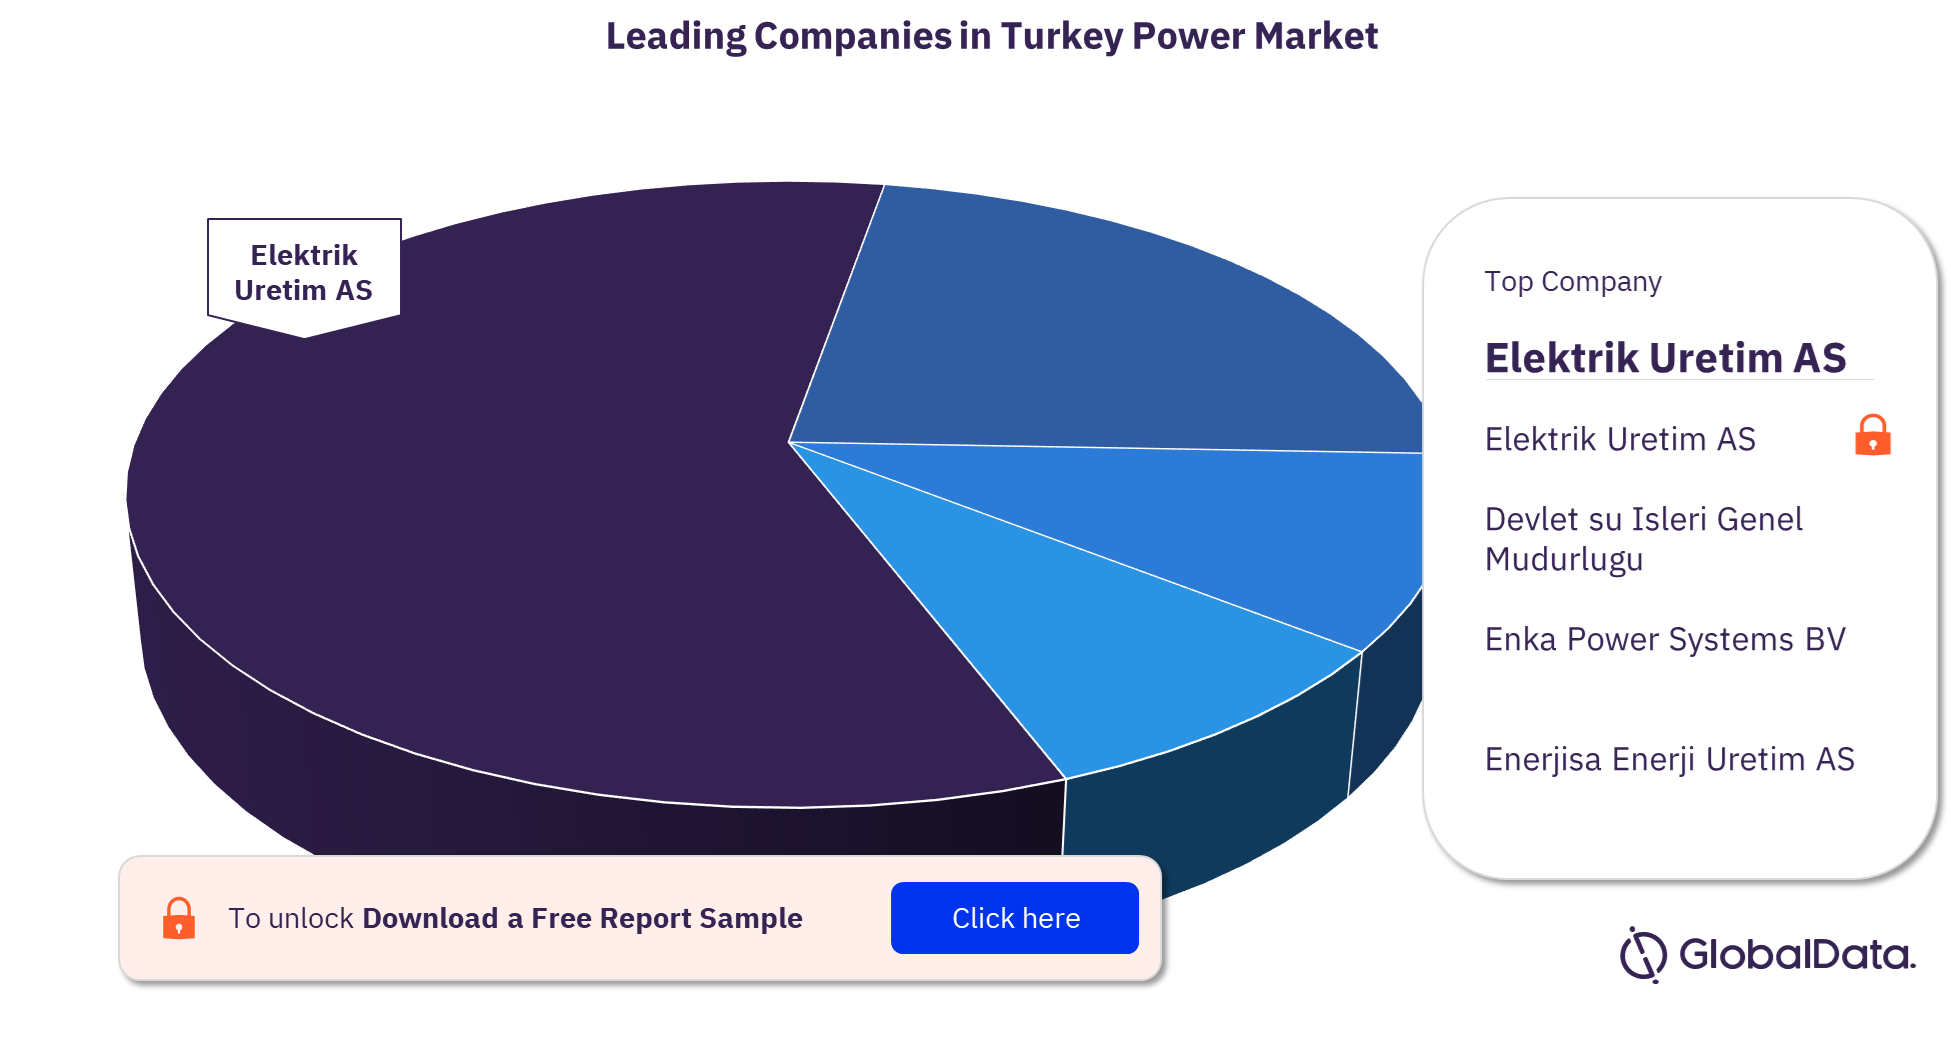 Turkey power market, by key players